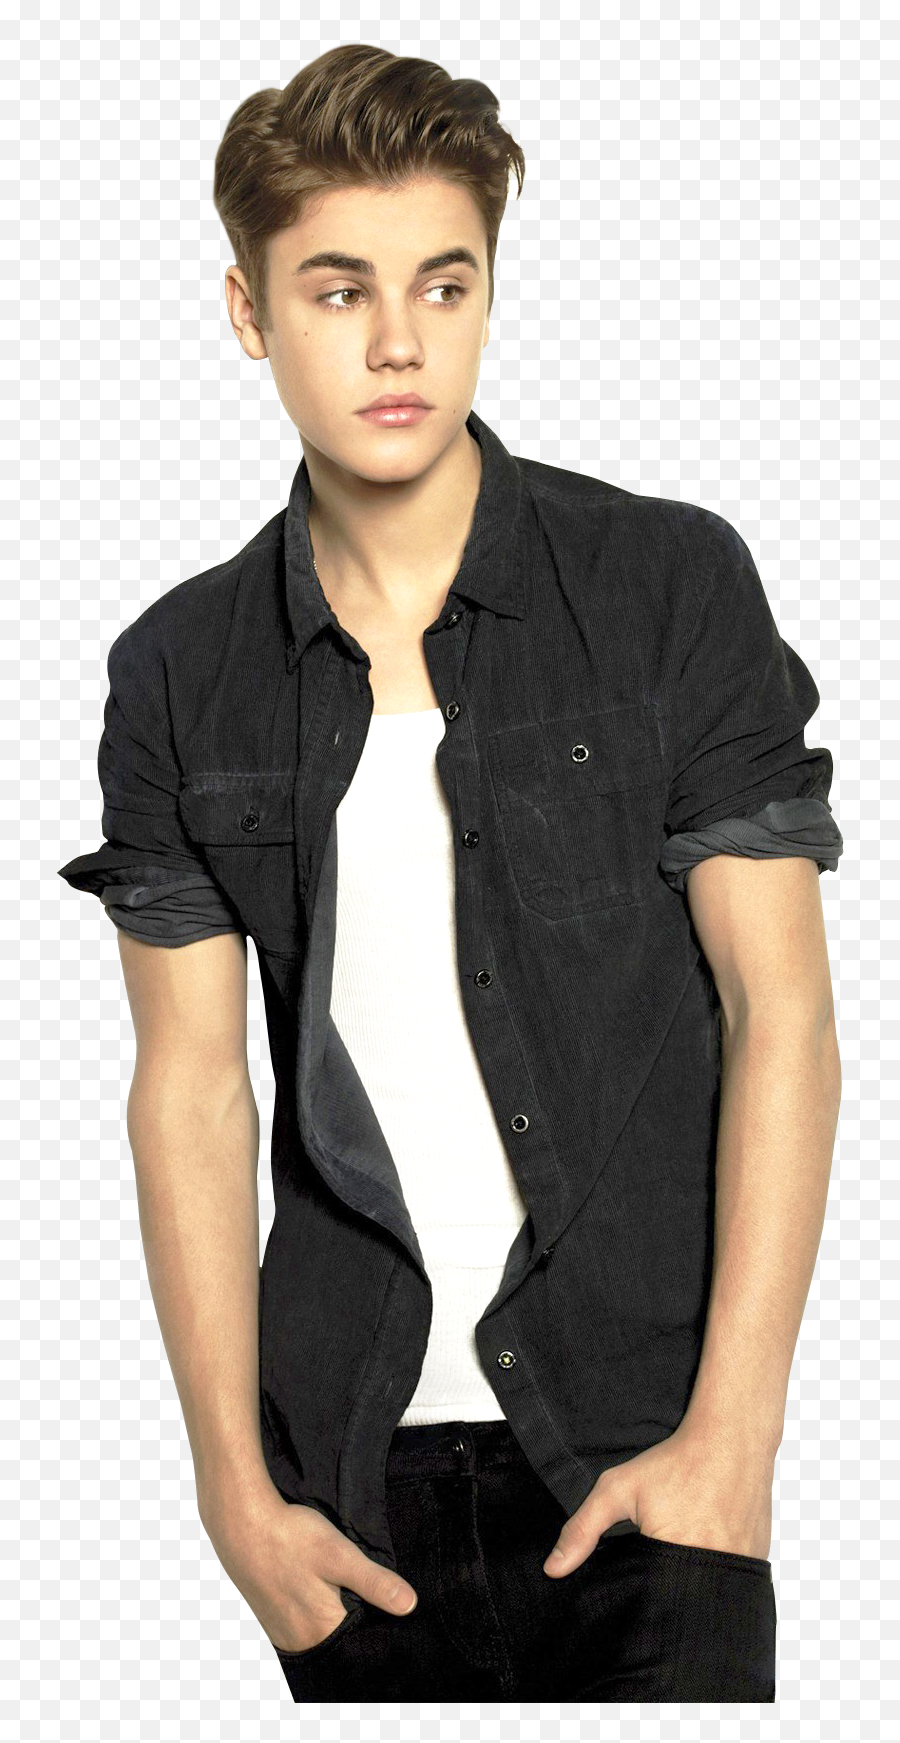 A Famous Singer Justin Bieber Png Image - Justin Bieber,Singer Png